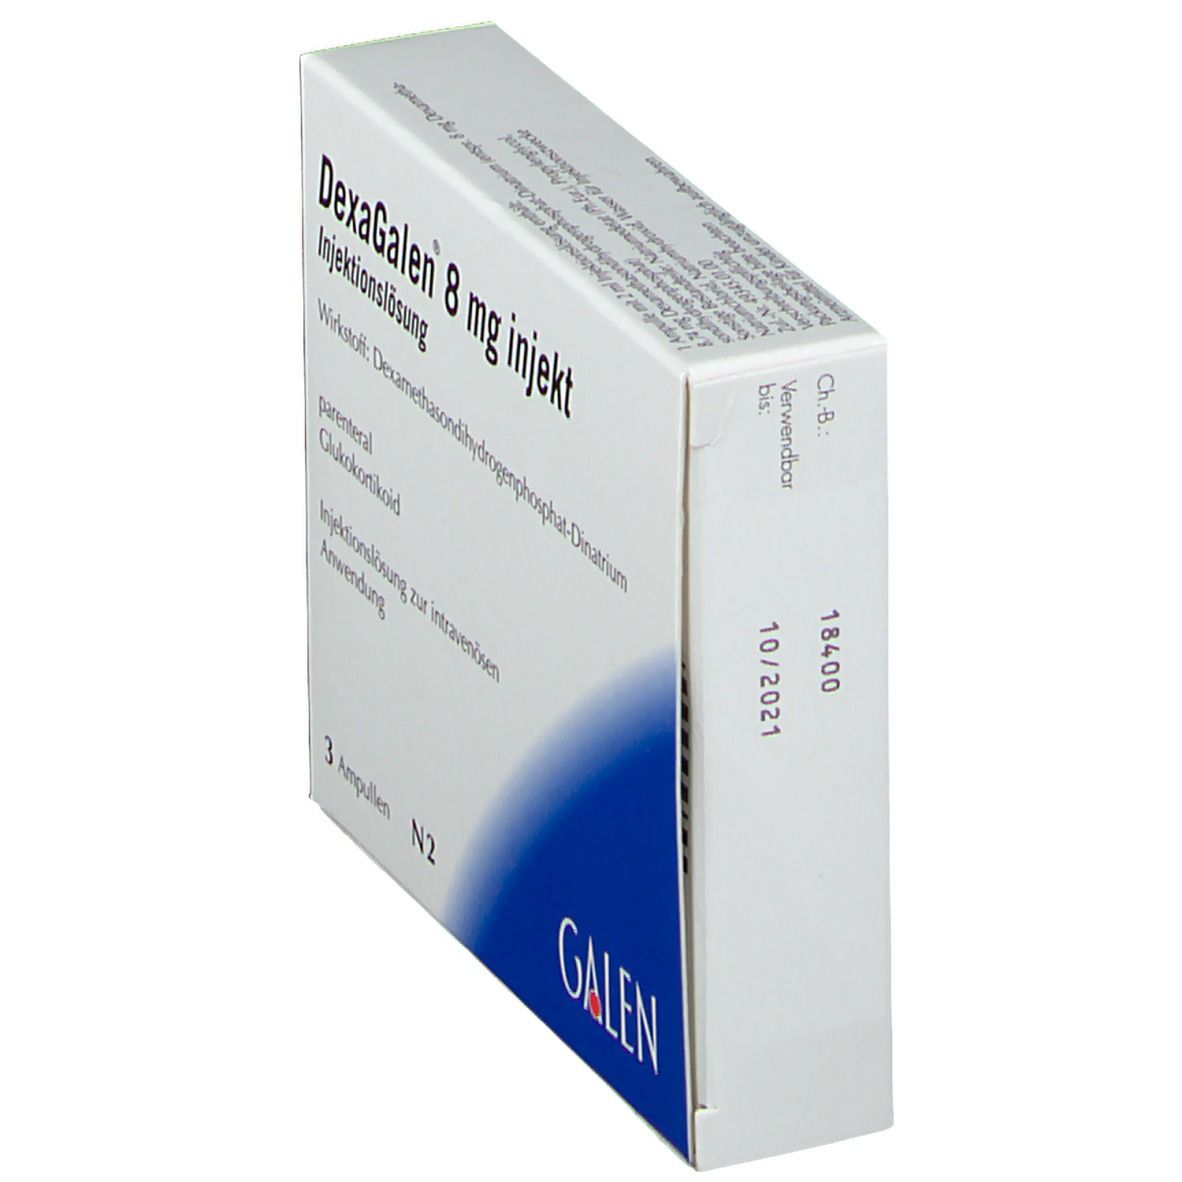 DexaGalen® 8 mg injekt